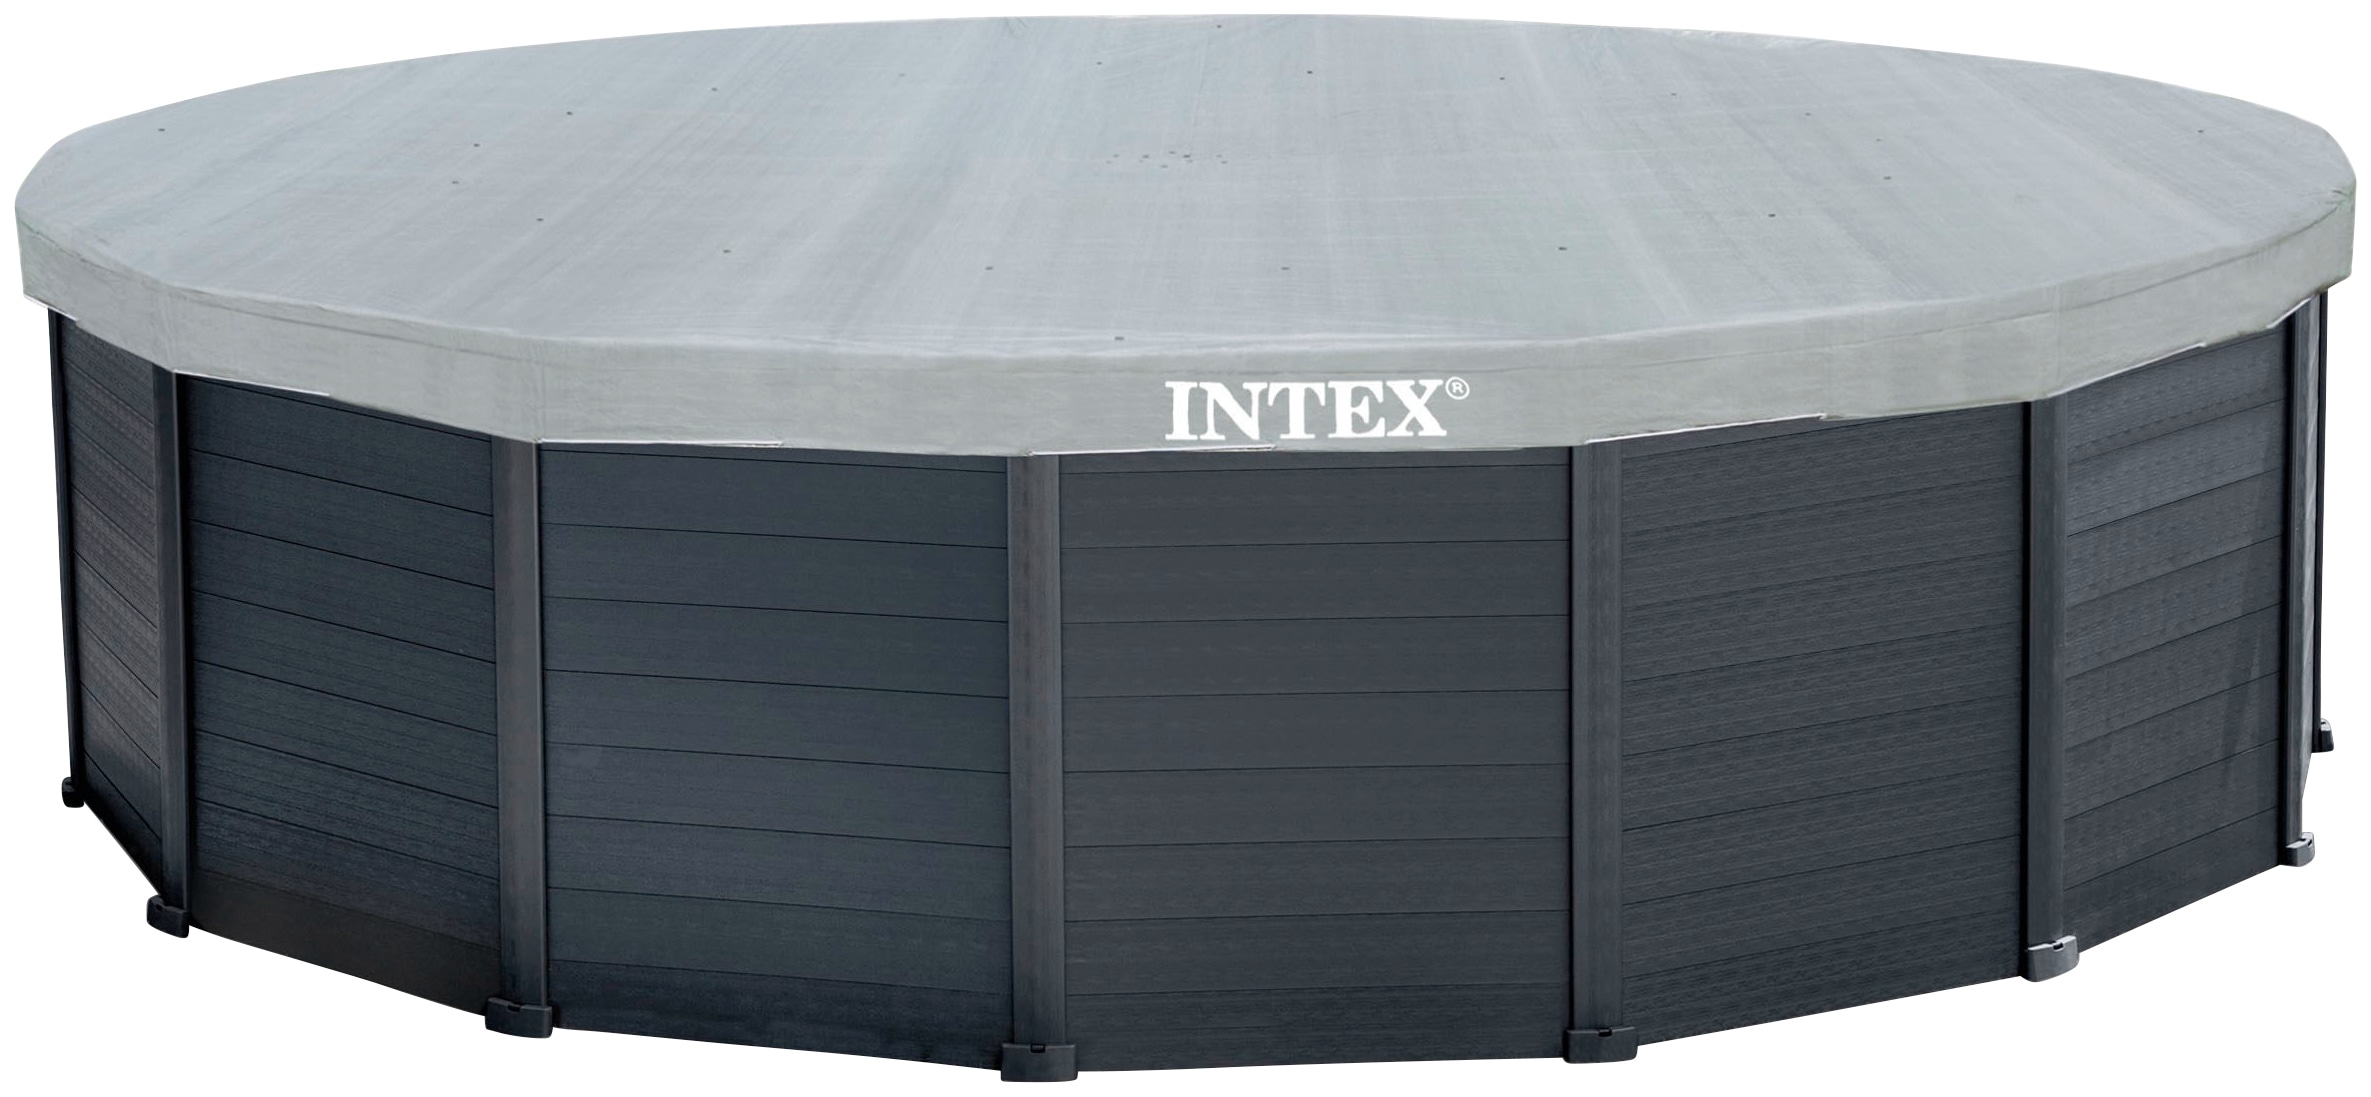 Intex Framepool »Graphite Gray Panel«, (Set), ØxH: 478x124 cm, inkl. Sandfilter, Leiter Abdeck- und Bodenplane